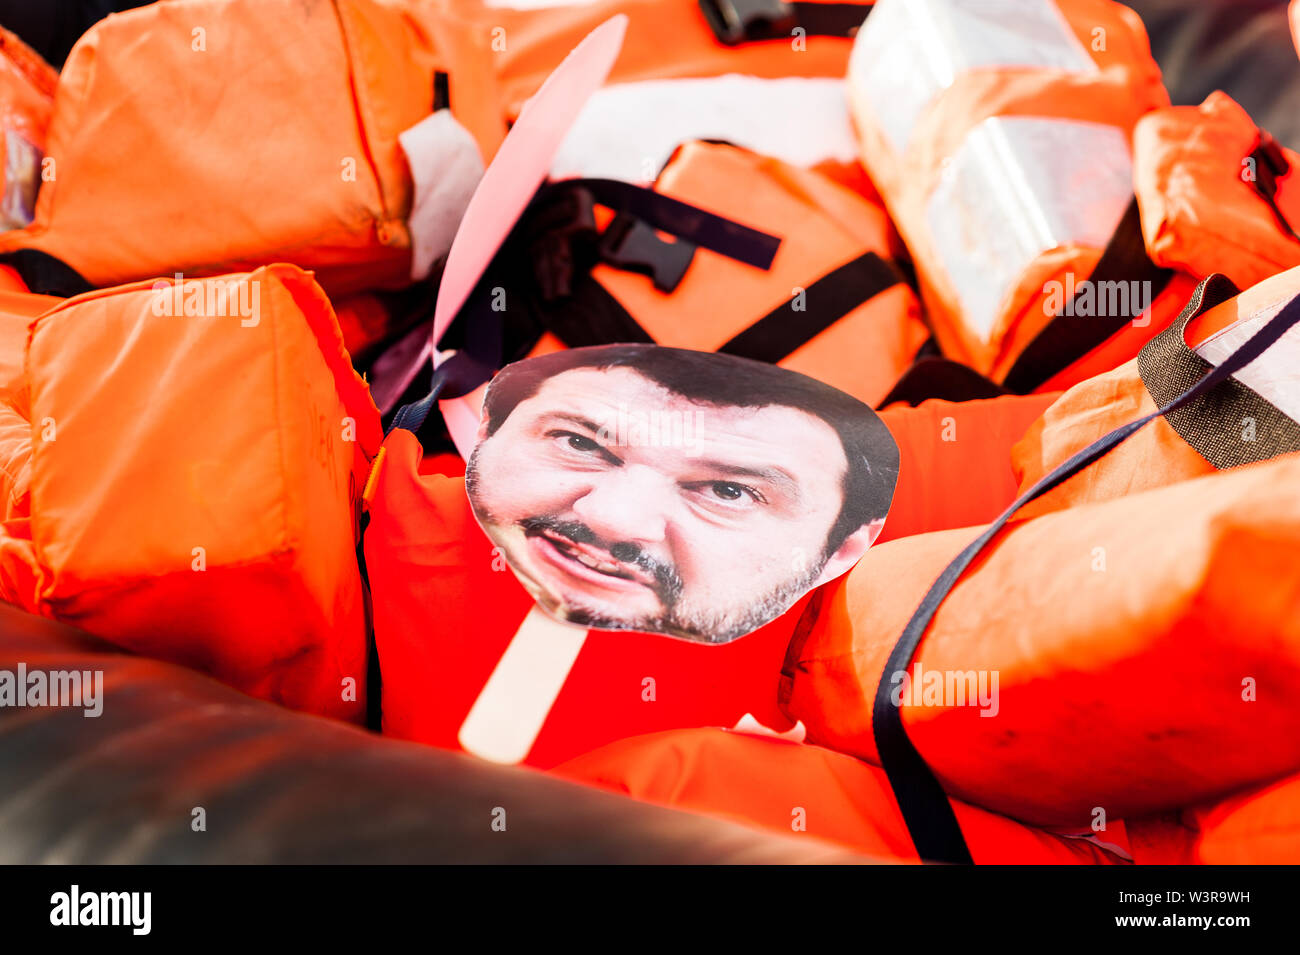 Barcelone, Espagne- 14 juillet 2019 : masque de visage à l'intérieur de la noyade salvini canot en caoutchouc avec des ceintures de sauvetage et proactiva bras ouverts autocollants comme symbole de mi Banque D'Images